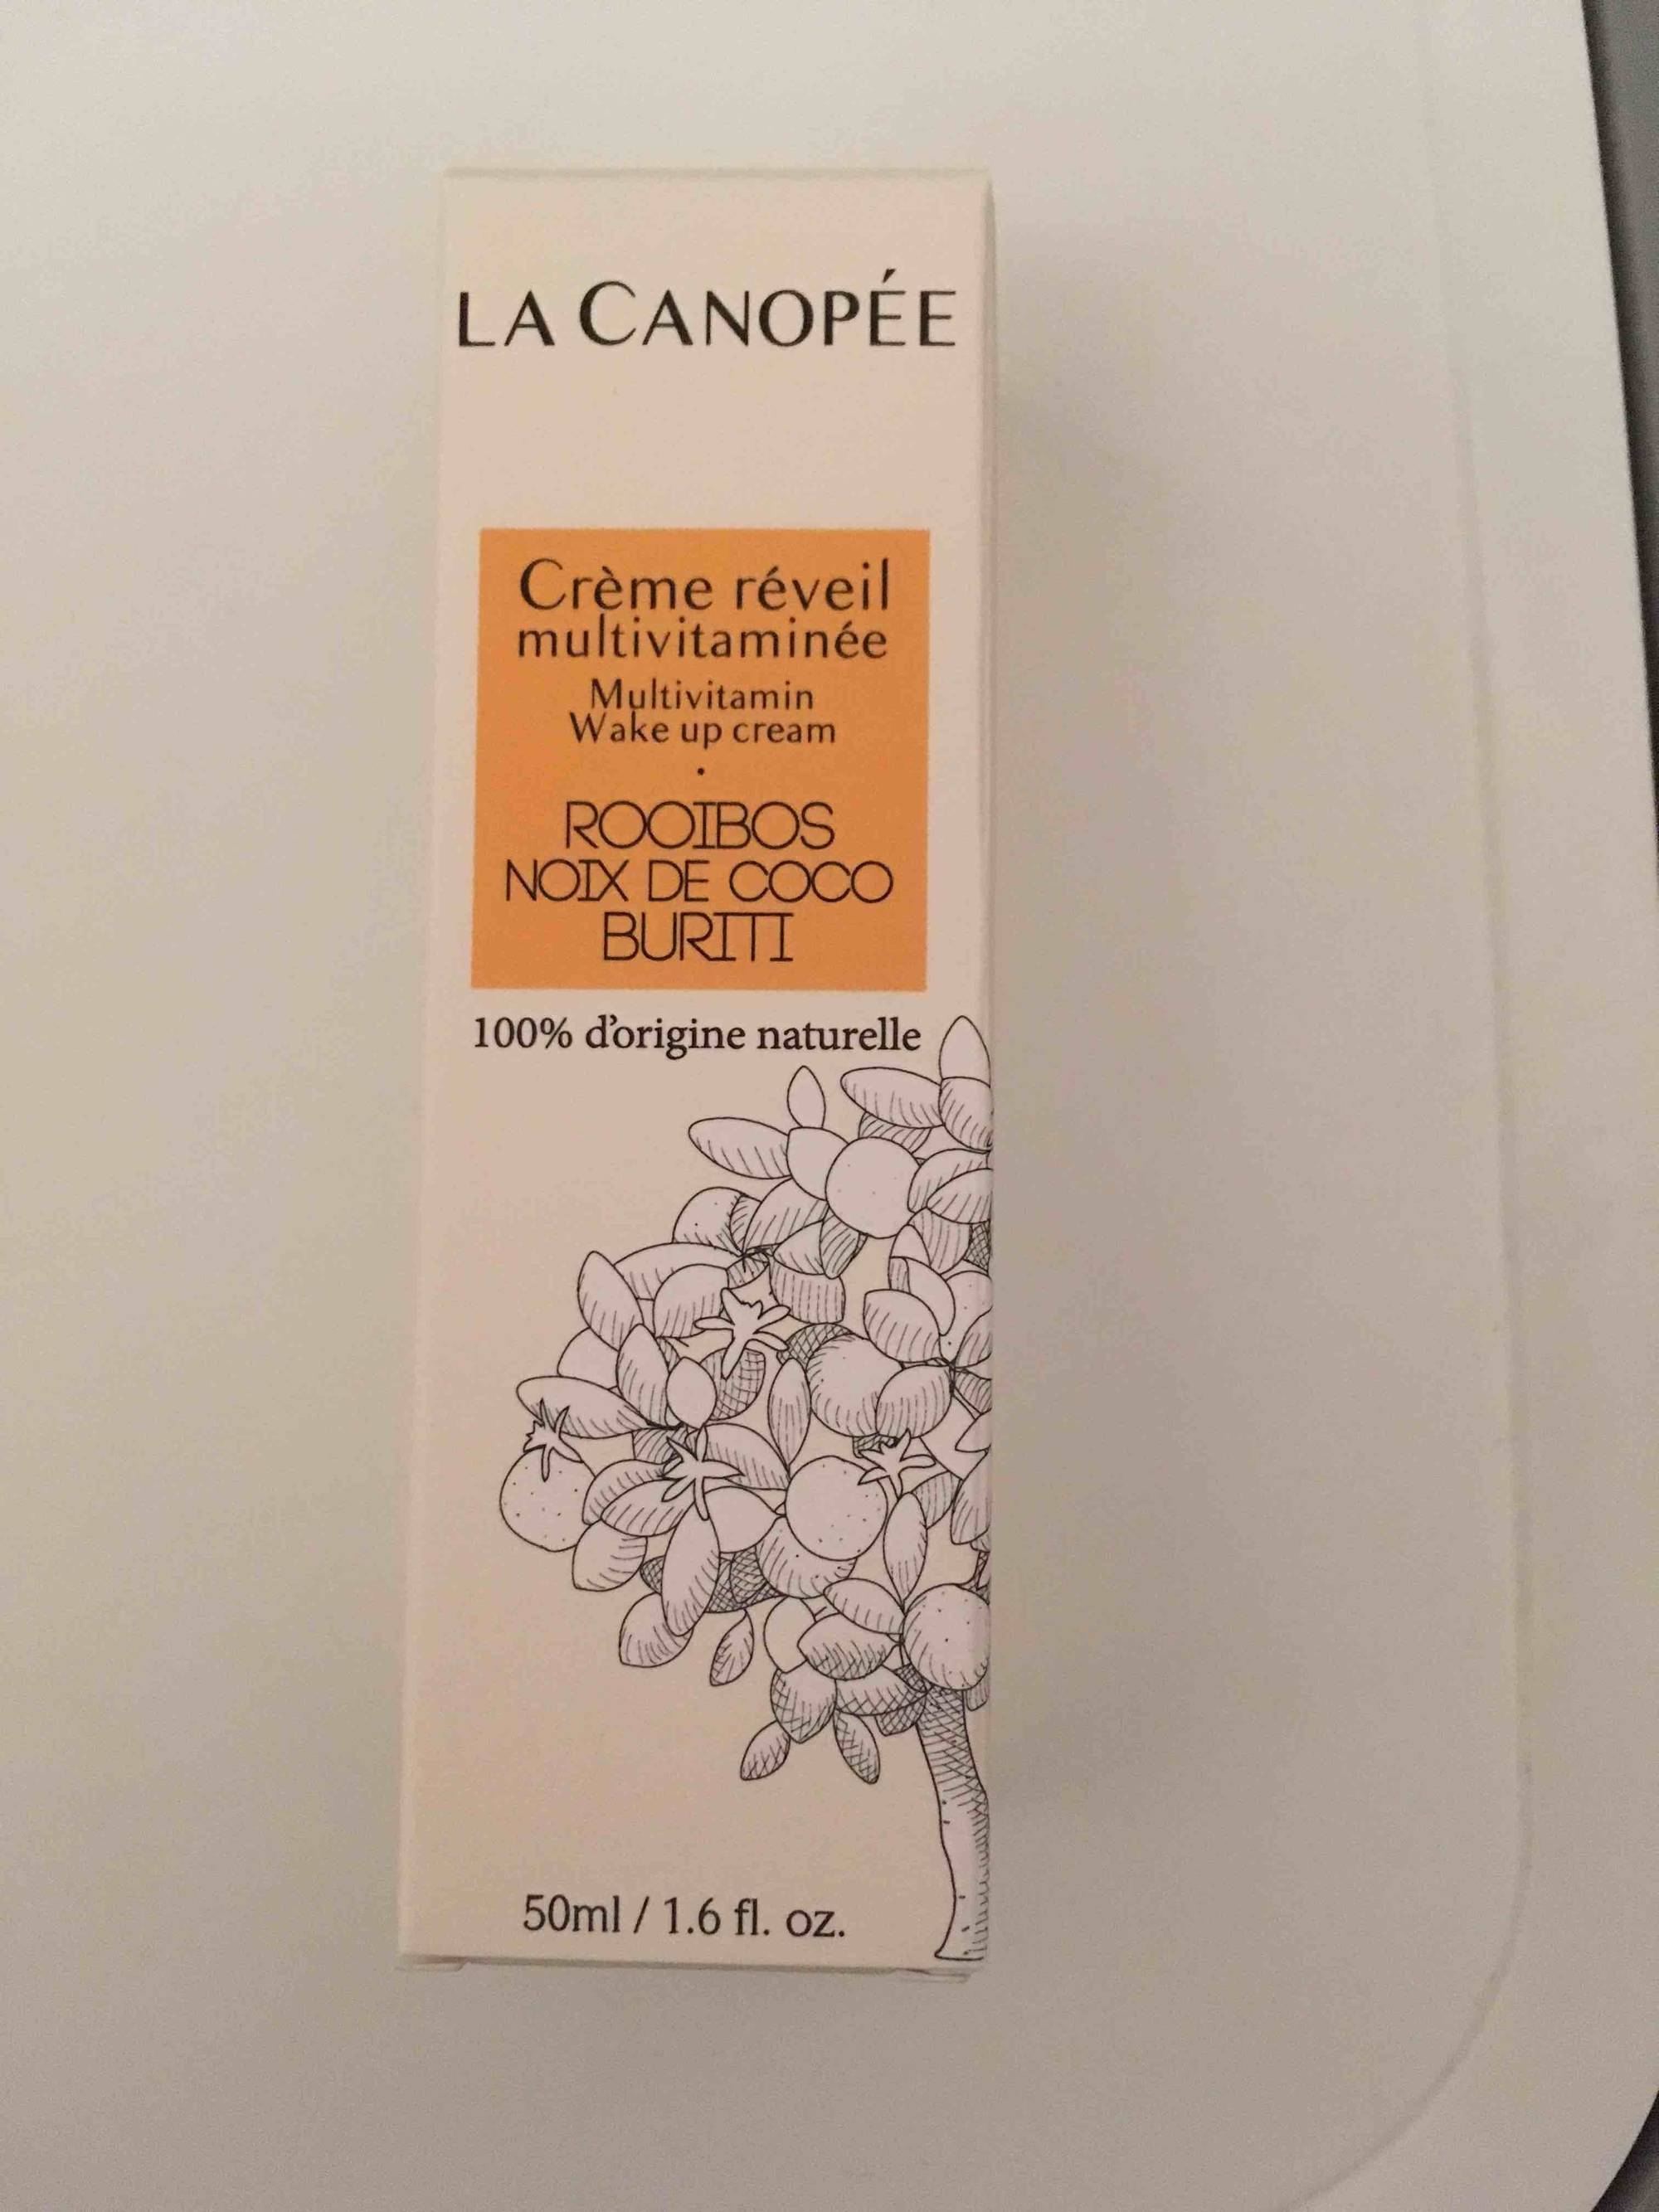 LA CANOPÉE - Rooibos noix de coco buriti - Crème réveil multivitaminée